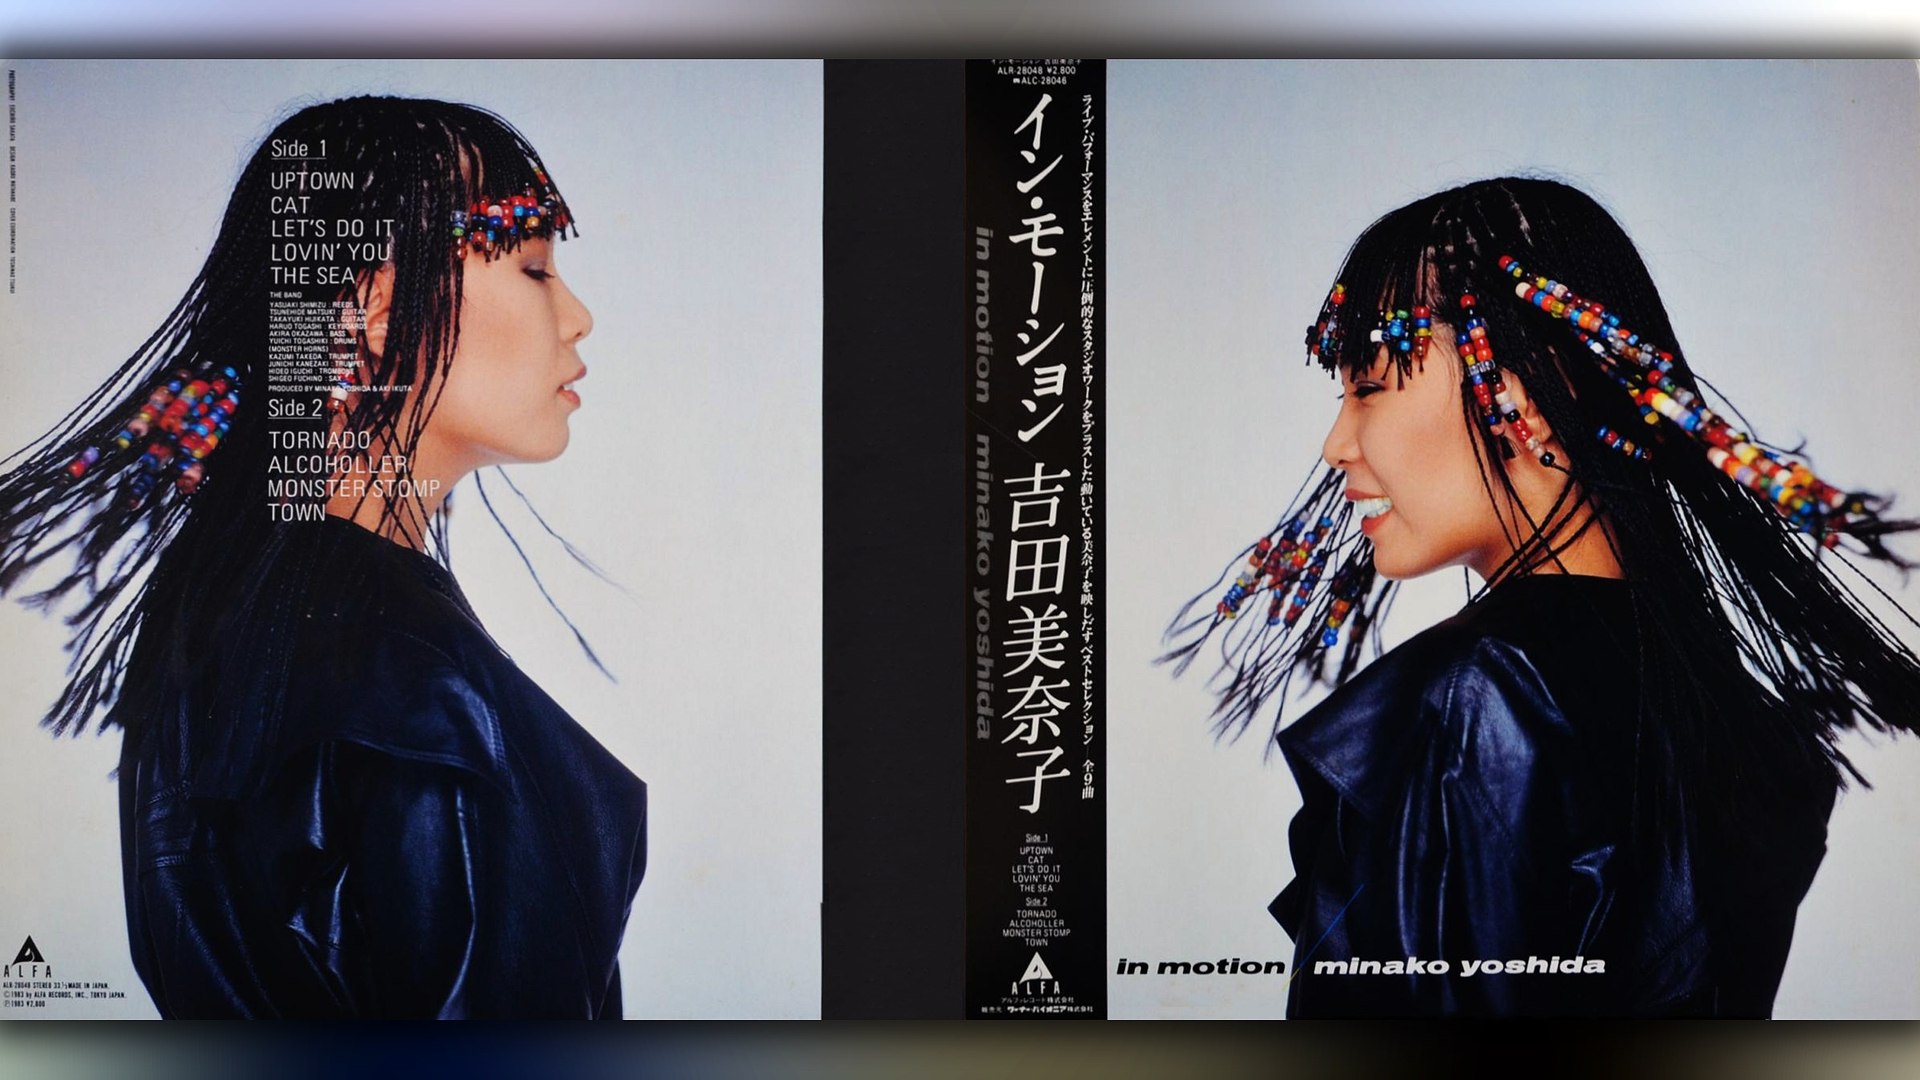 お得なクーポン 吉田美奈子 / MINAKO FAVORITES レコード | www.barkat.tv